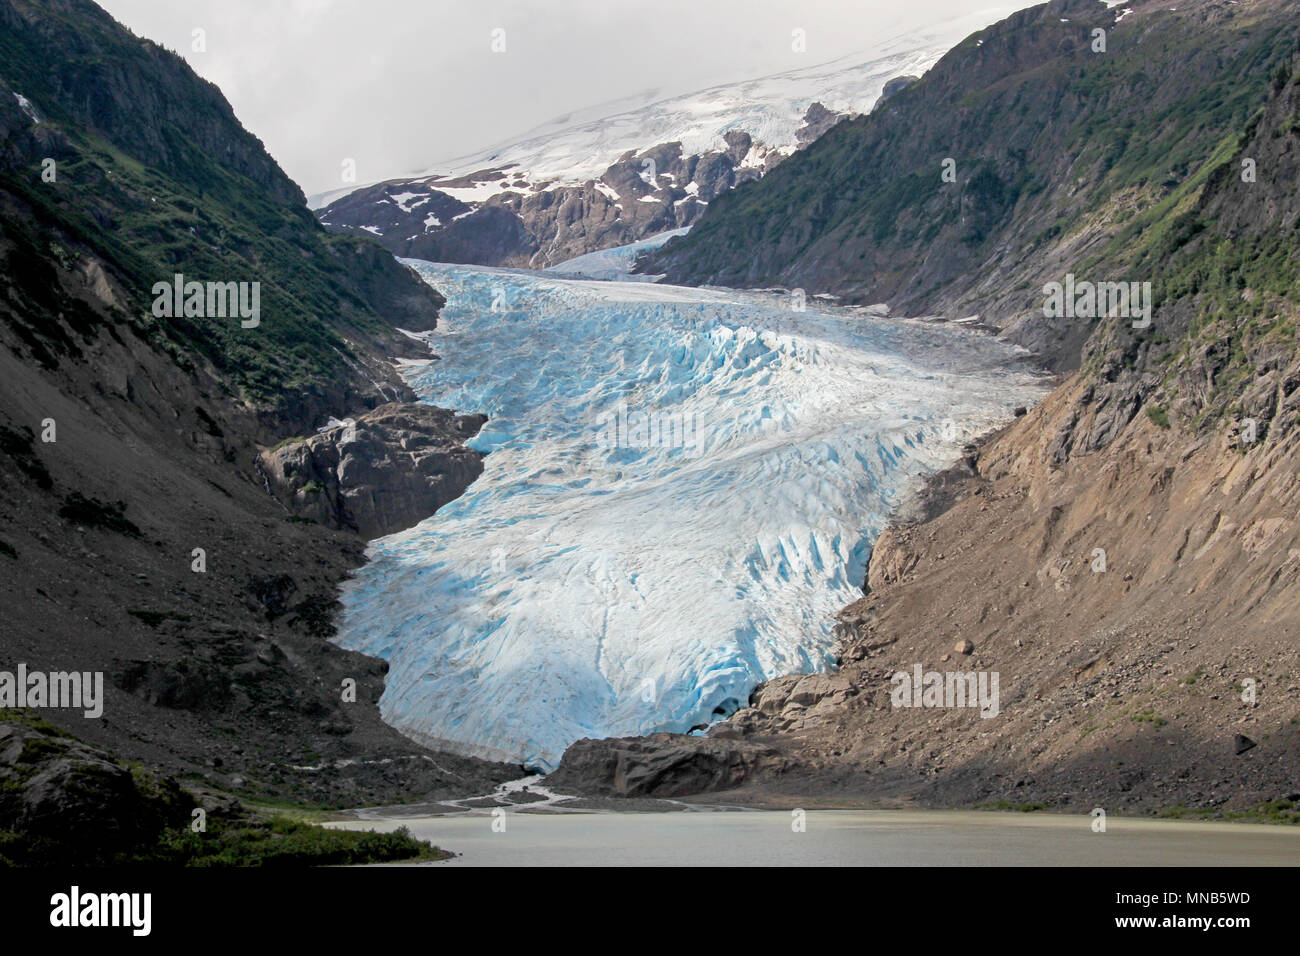 Glacier Salmon près de Hyder, Alaska et Stewart, le Canada, le glacier est situé sur le côté canadien de la booarder en Colombie-Britannique Banque D'Images